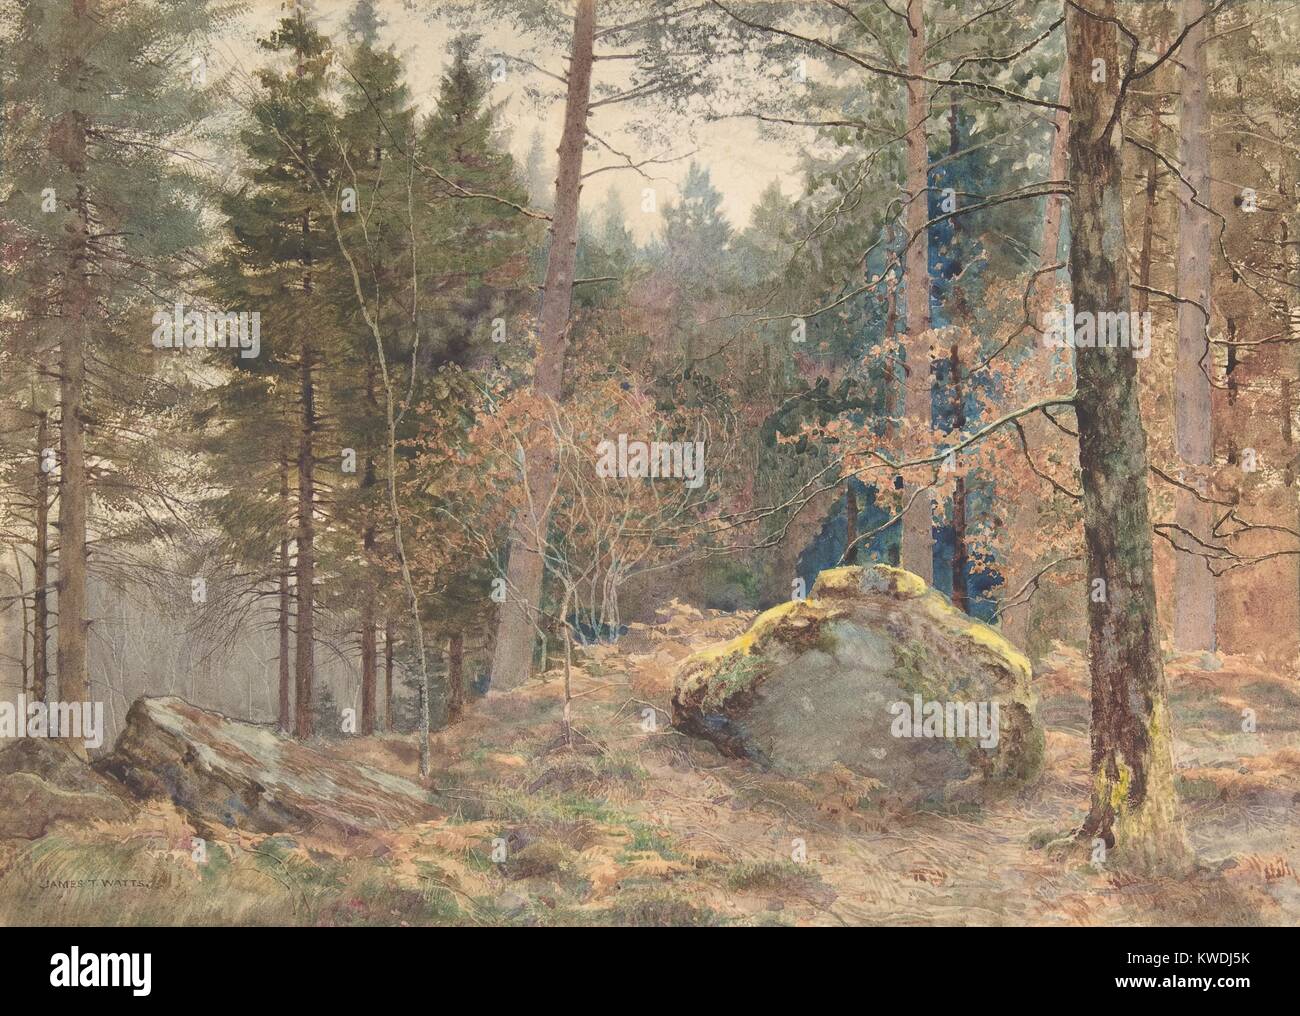 IN EINEM WALISISCHEN KIEFER, von James Thomas Watts, 1891, British Aquarell Malerei. Watt wurde von Ruskin und die präraffaeliten beeinflusst. Dieses kleine detaillierte Landschaft ist ein Meisterwerk der englischen Aquarell (BSLOC 2017 9 138) Stockfoto